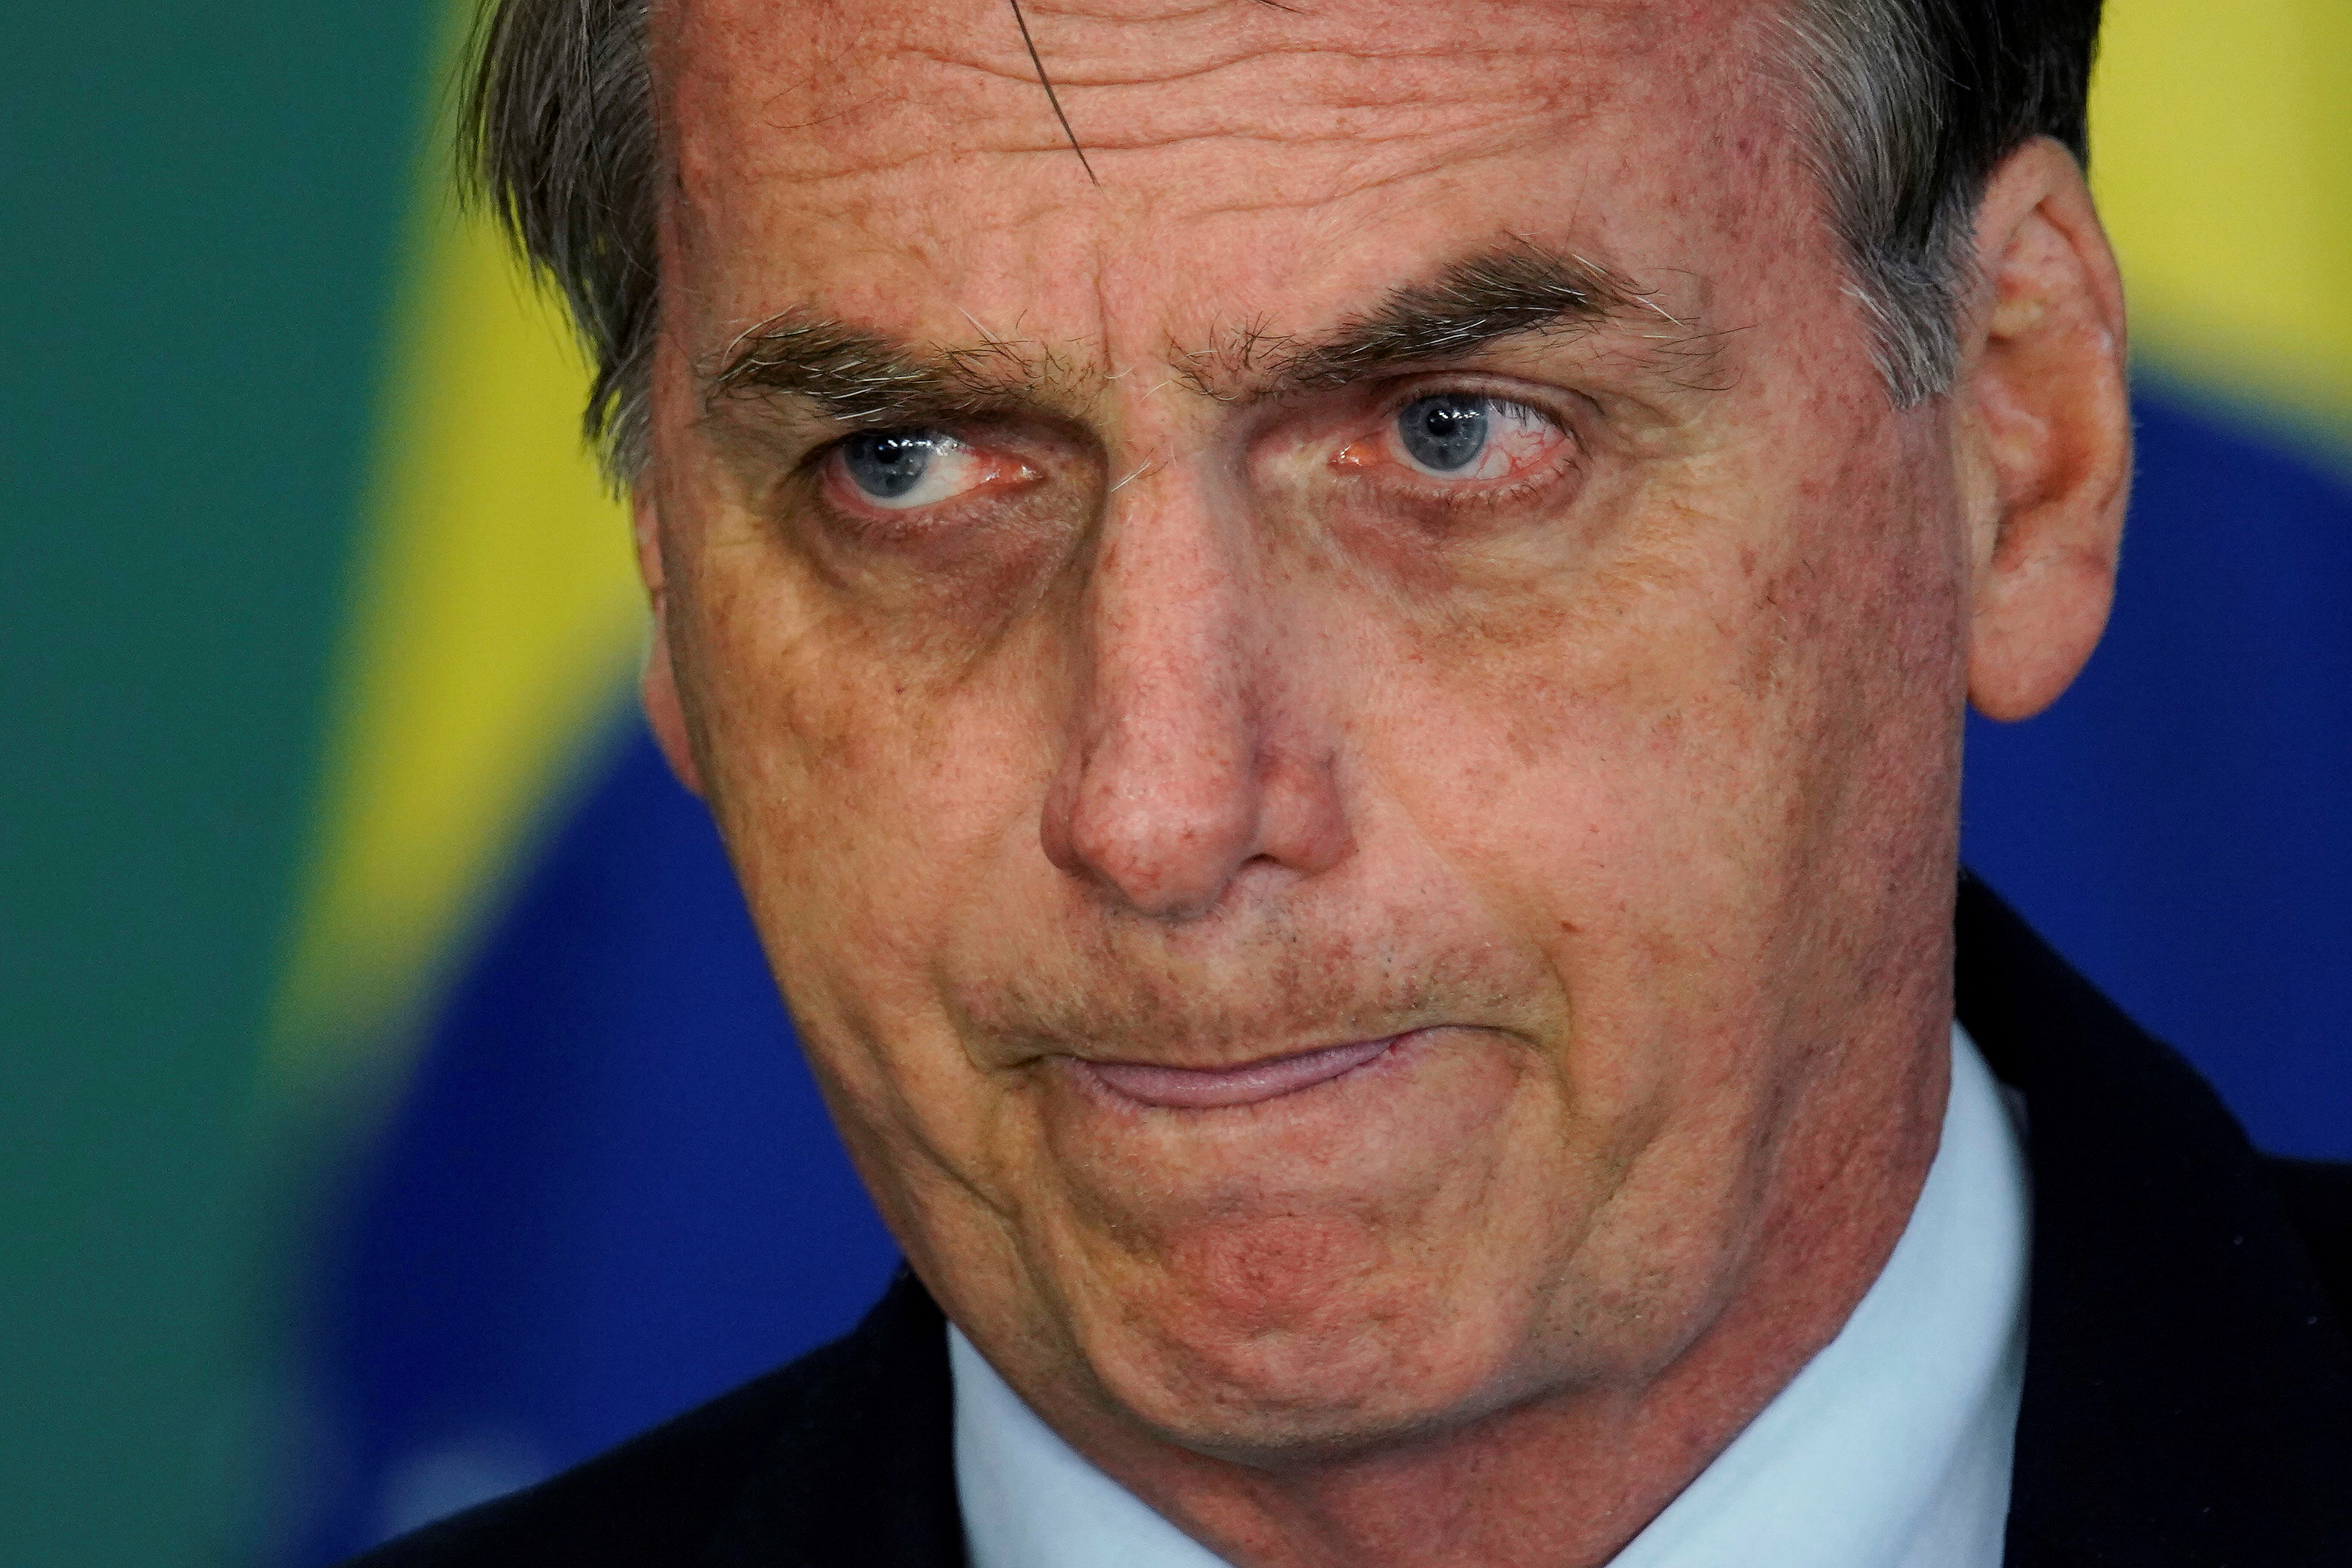 “La justicia nació para todos”, afirmó Bolsonaro sobre detención de Temer